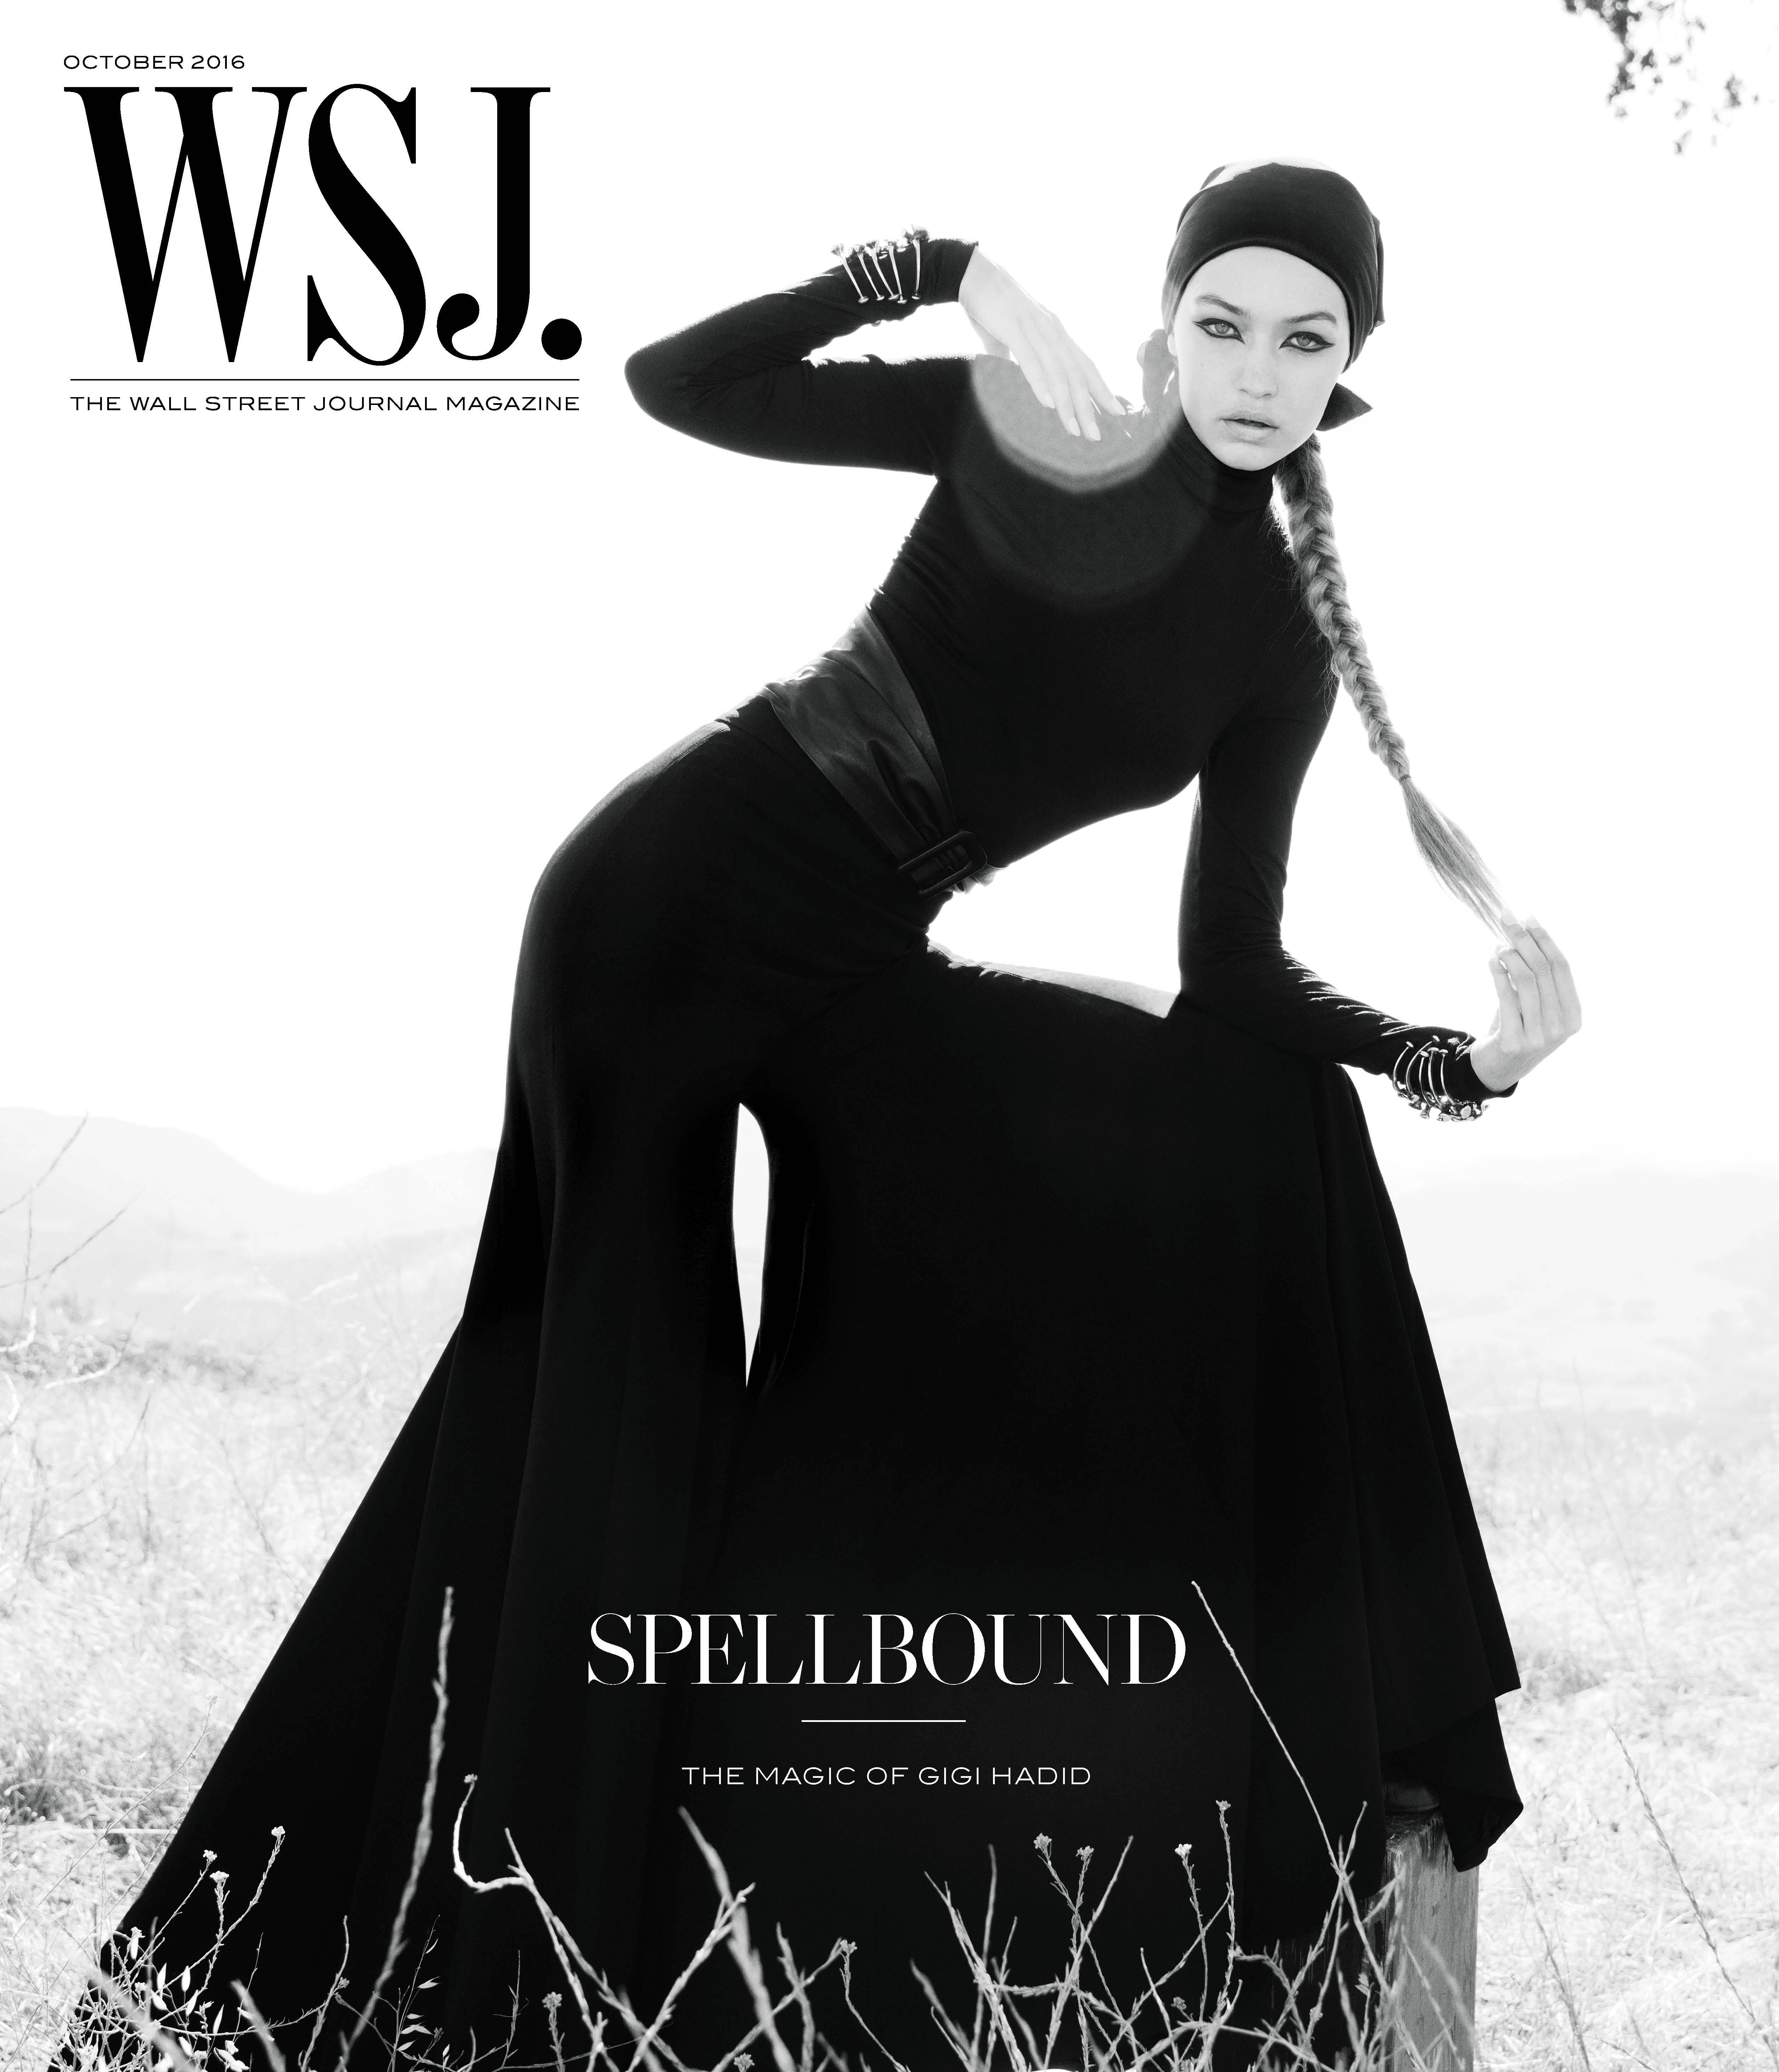 WSJ Magazine - "Spellbound: The Magic of Gigi Hadid," October